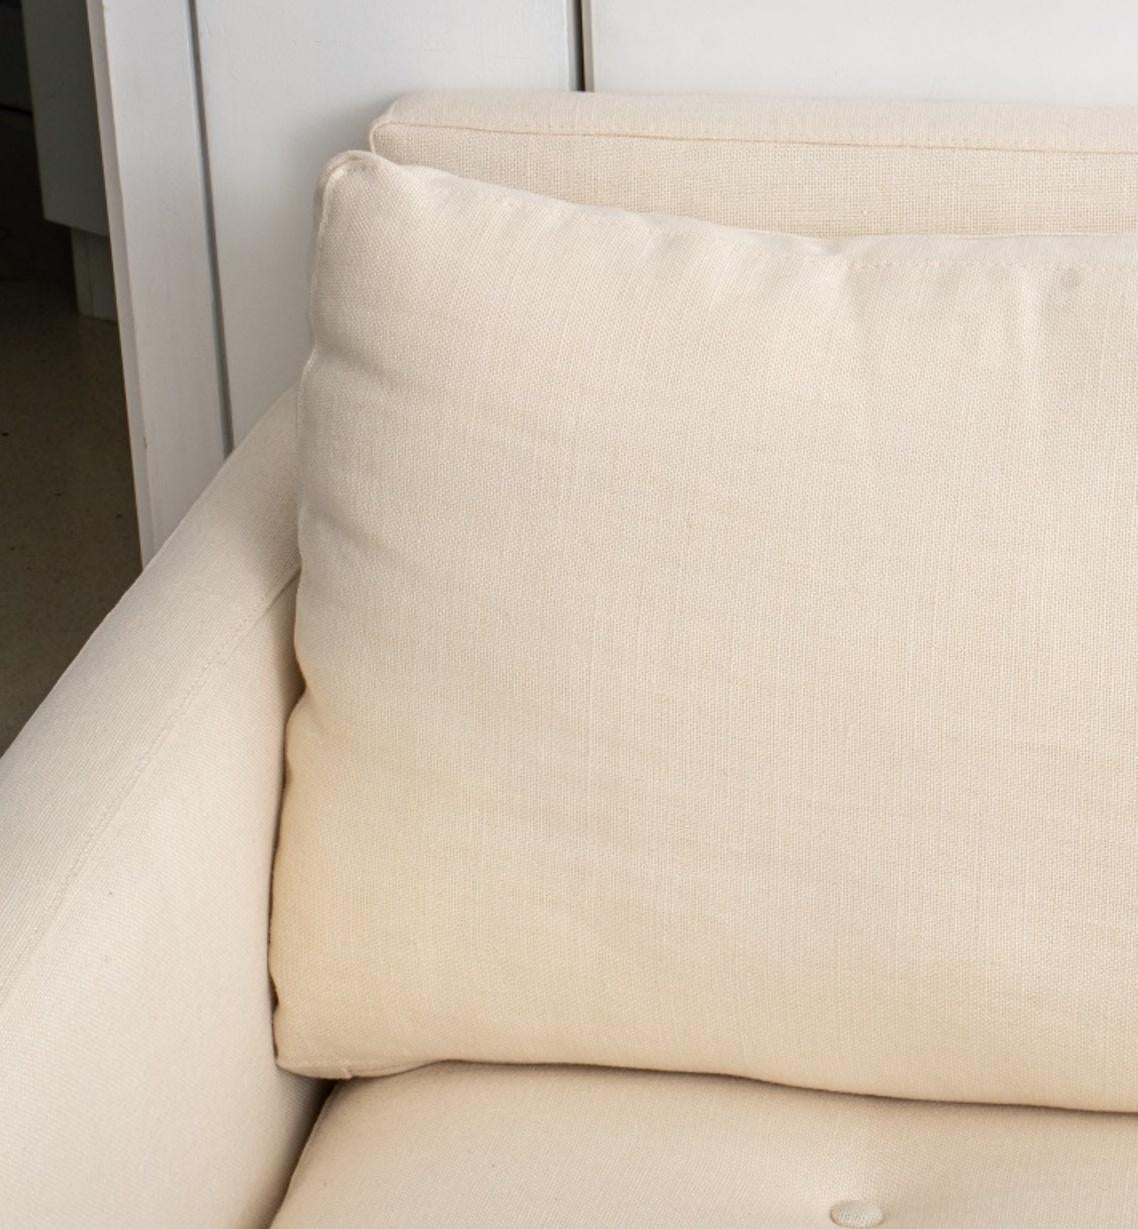 Florence Knoll Mid-Century Modern Art Leinen gepolsterte Couch, auf vier goldfarbenen Metall-Klammerfüßen. 31